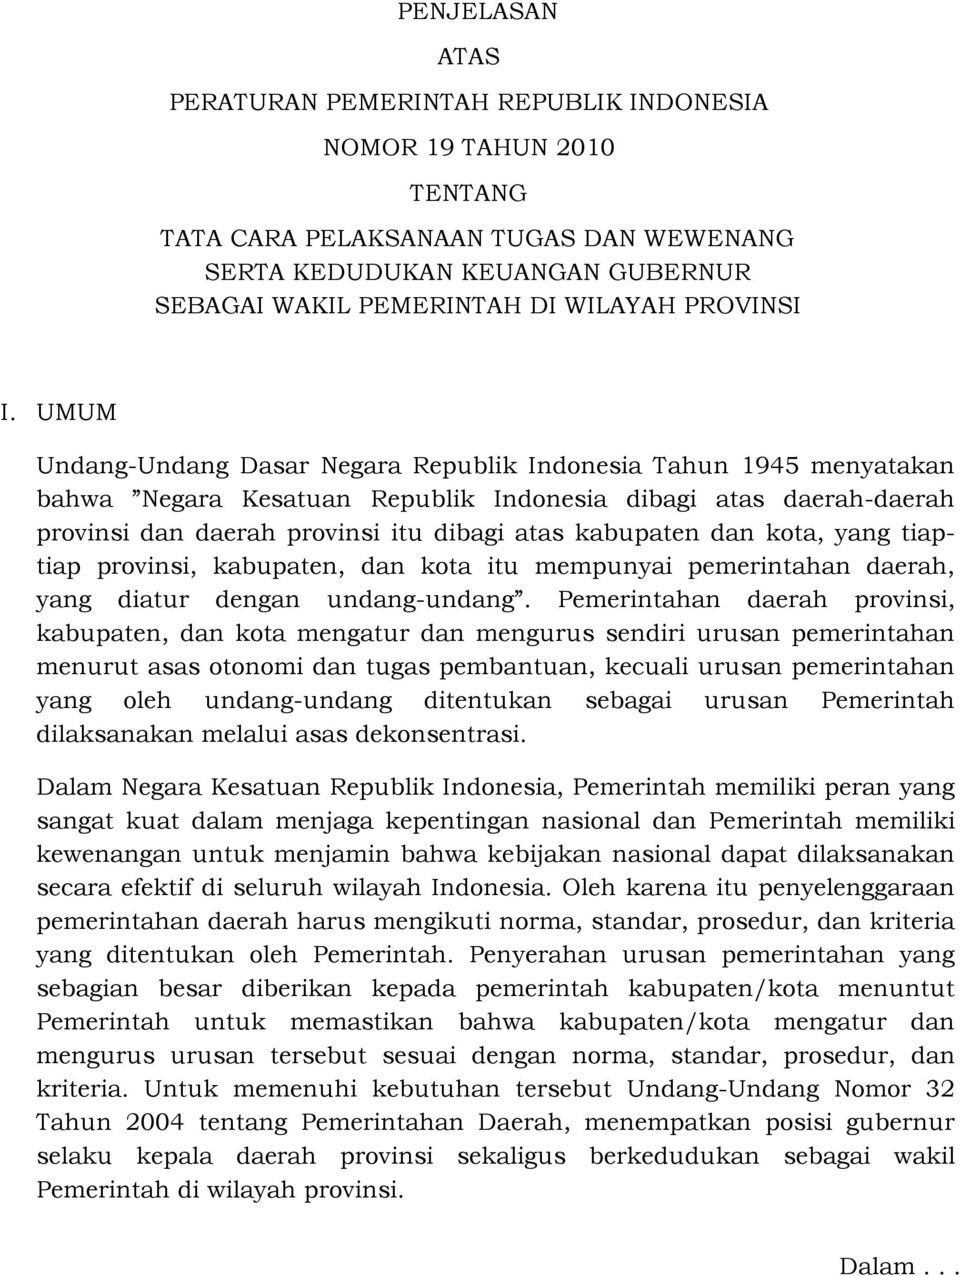 UMUM Undang-Undang Dasar Negara Republik Indonesia Tahun 1945 menyatakan bahwa Negara Kesatuan Republik Indonesia dibagi atas daerah-daerah provinsi dan daerah provinsi itu dibagi atas kabupaten dan